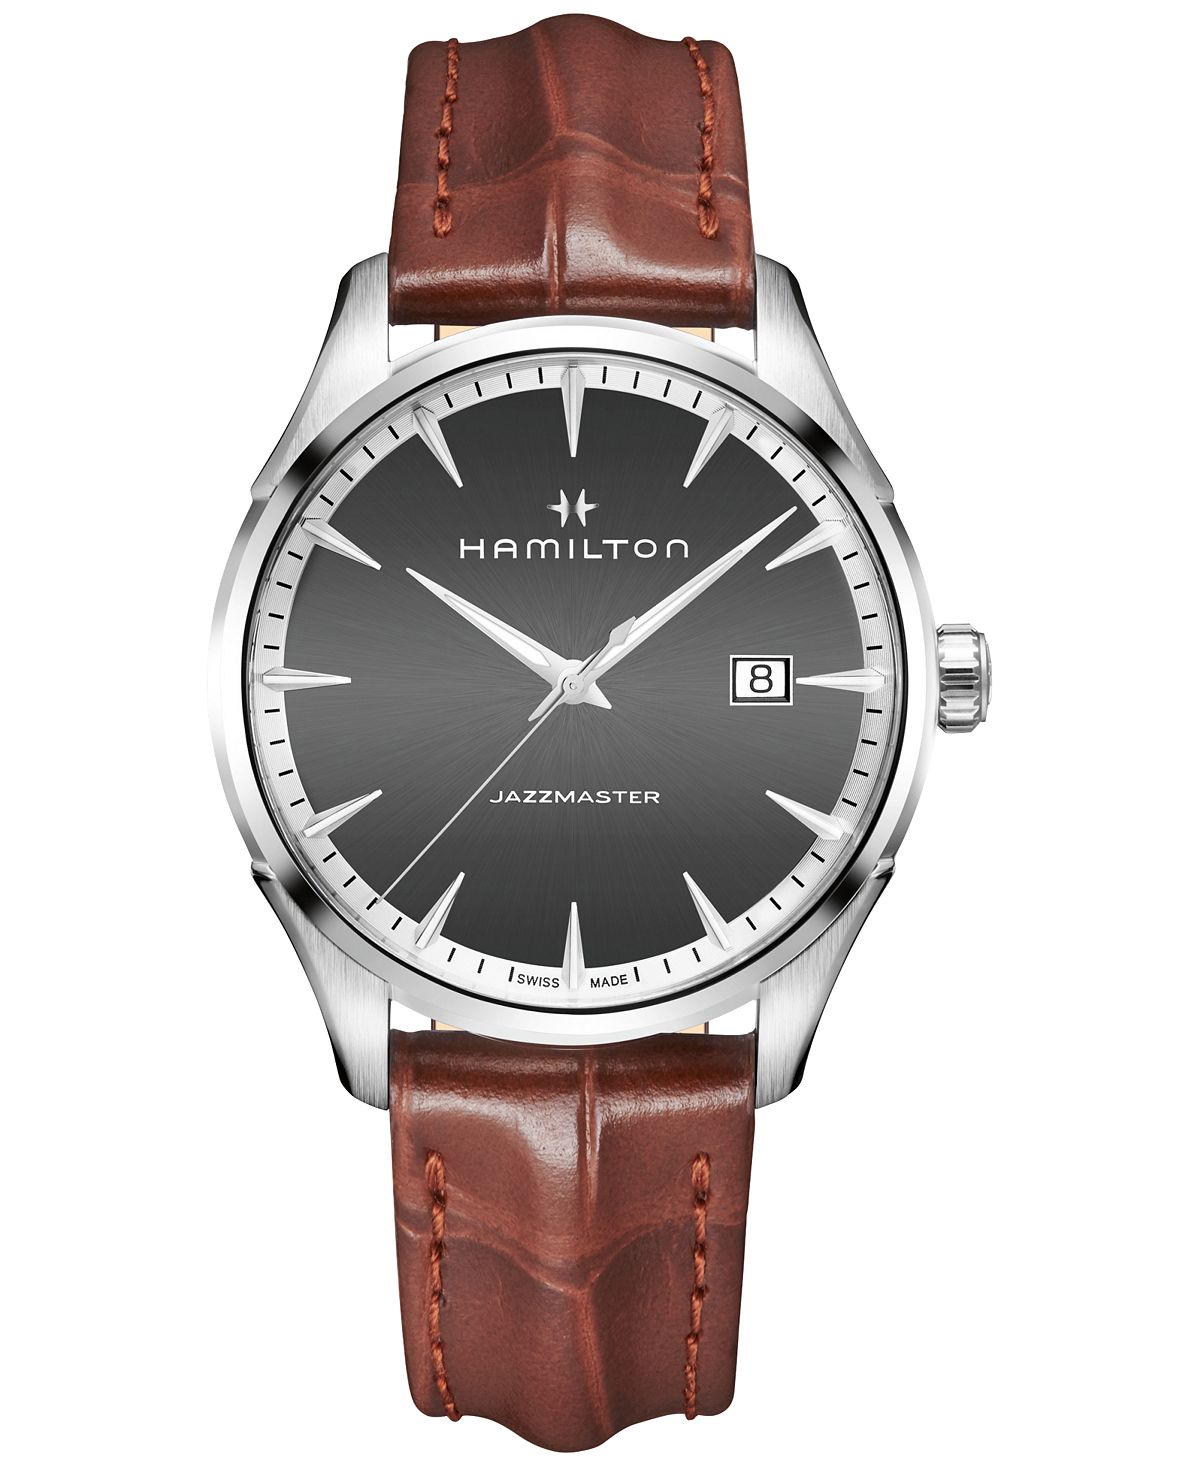 Мужские часы Swiss Jazzmaster светло-коричневого цвета с кожаным ремешком, 40 мм Hamilton наручные часы hamilton jazzmaster h32475140